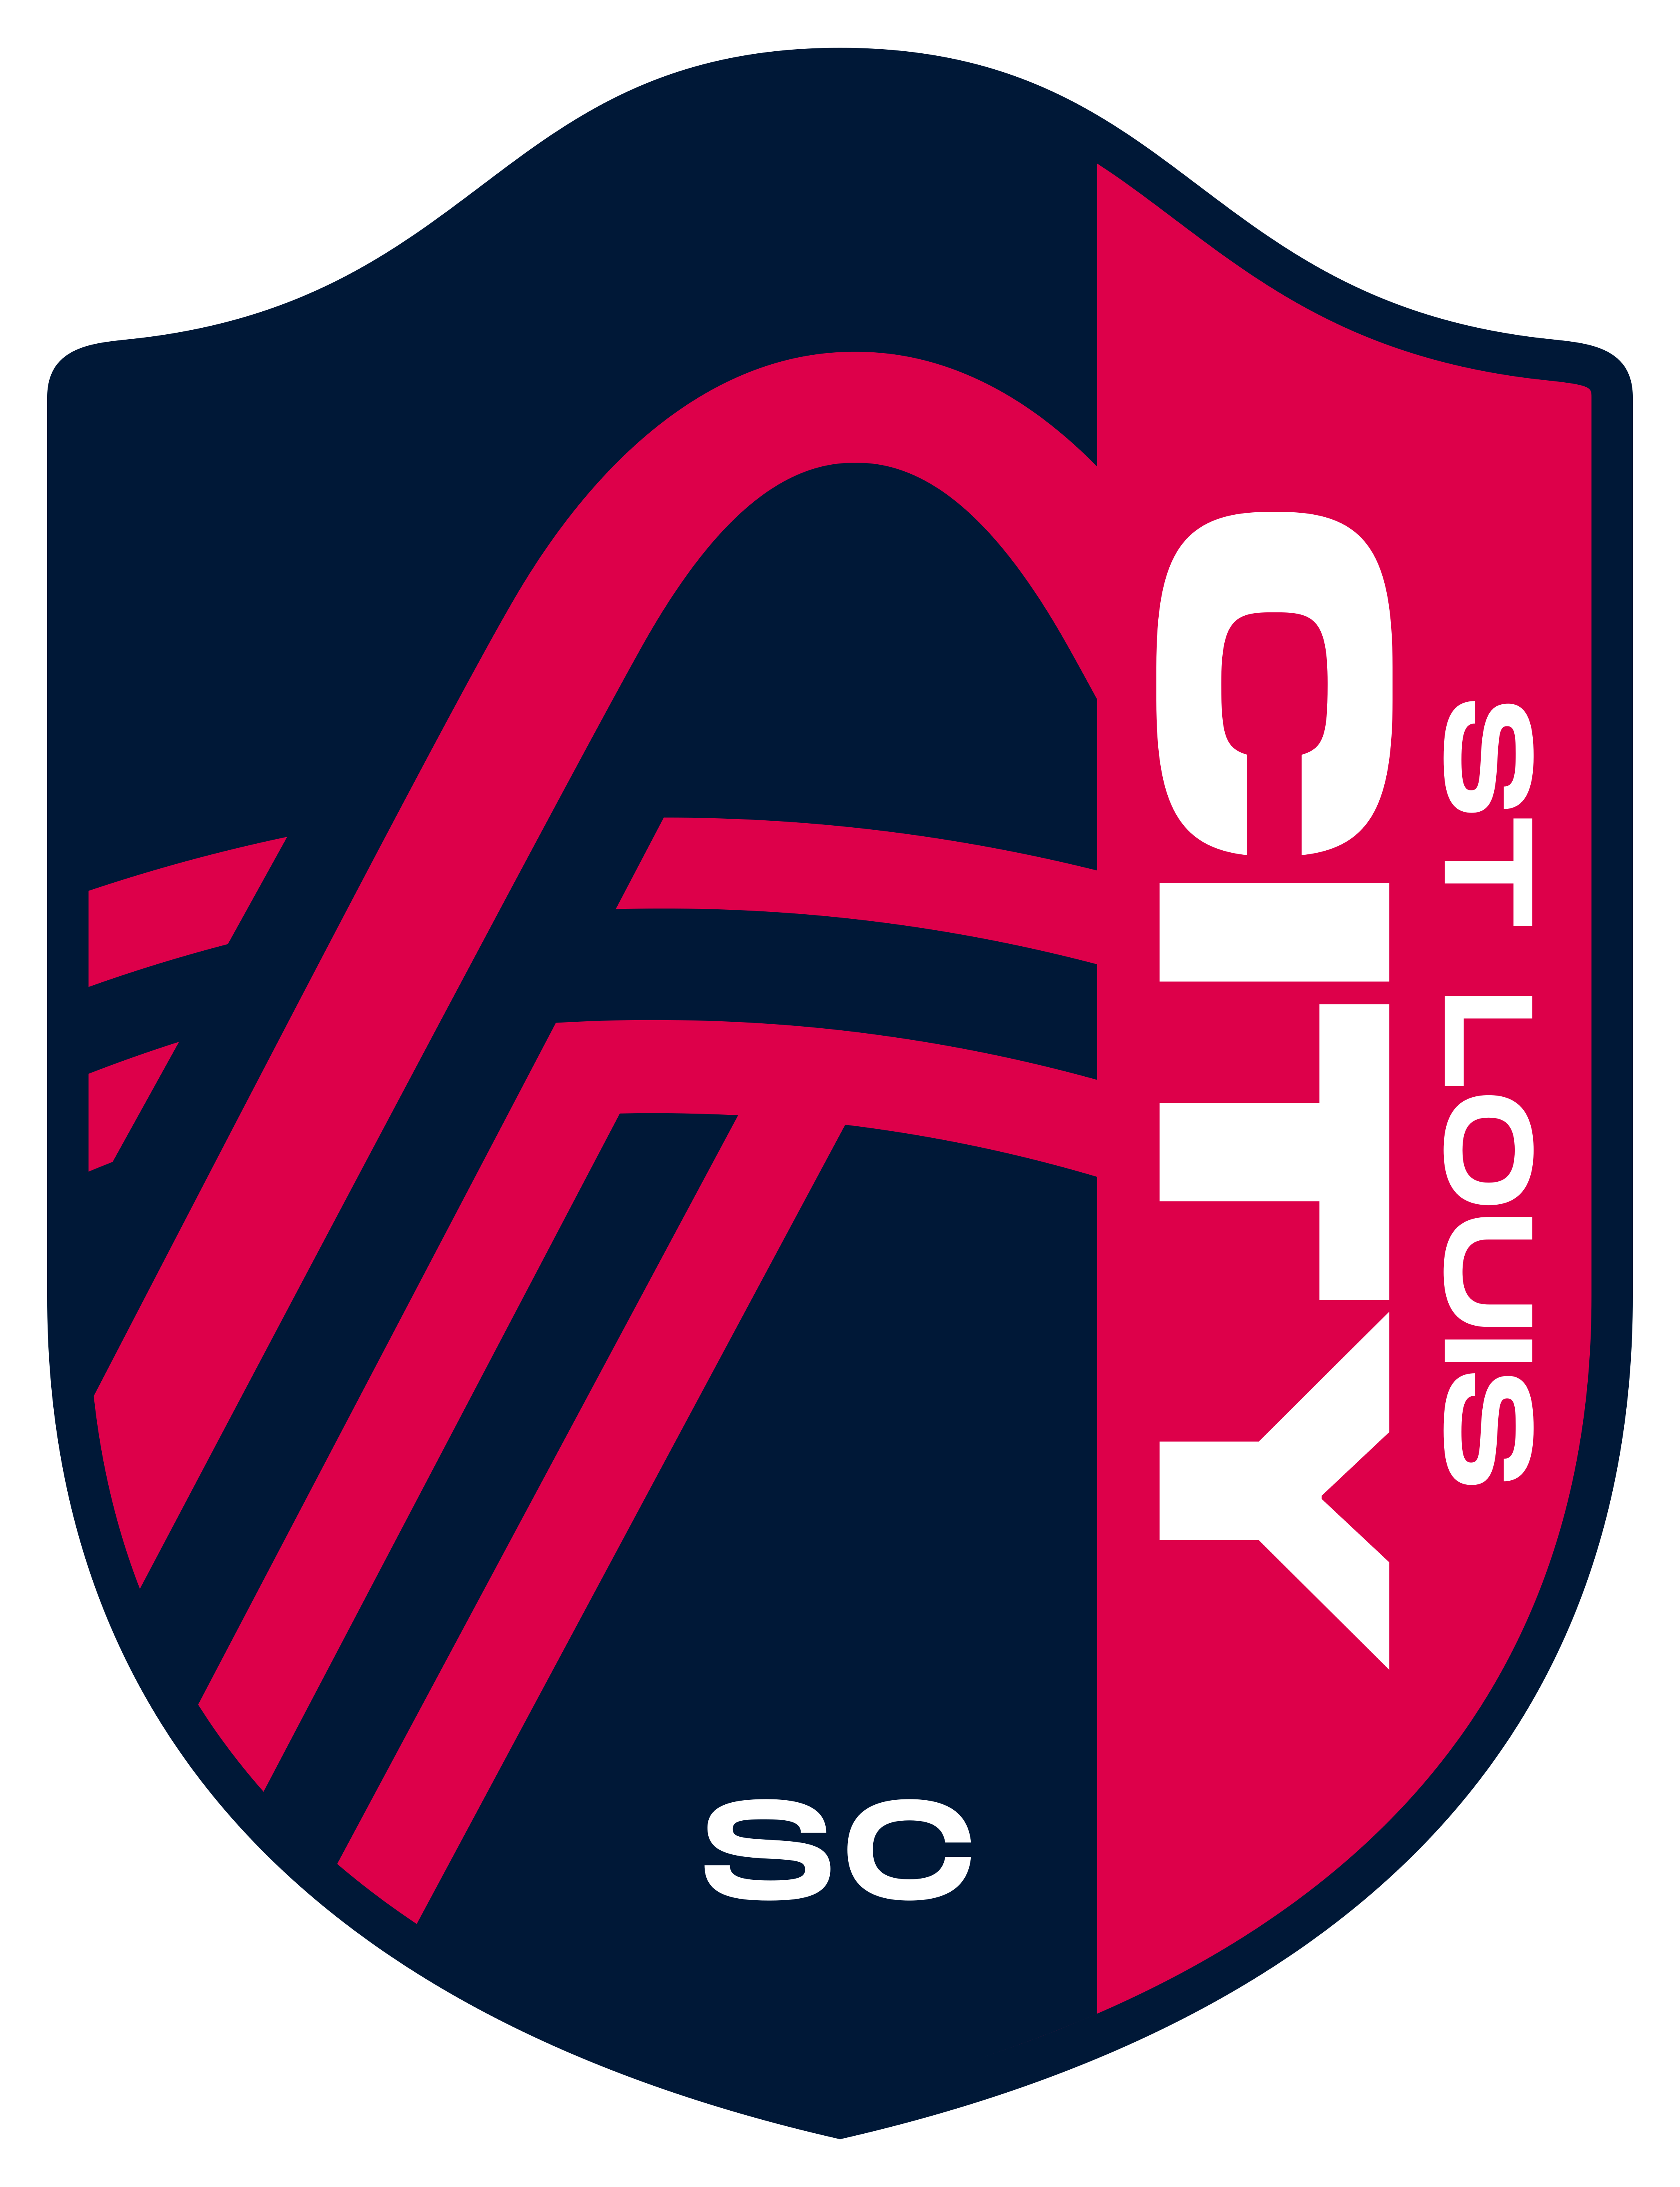 St. Louis City SC Logo.